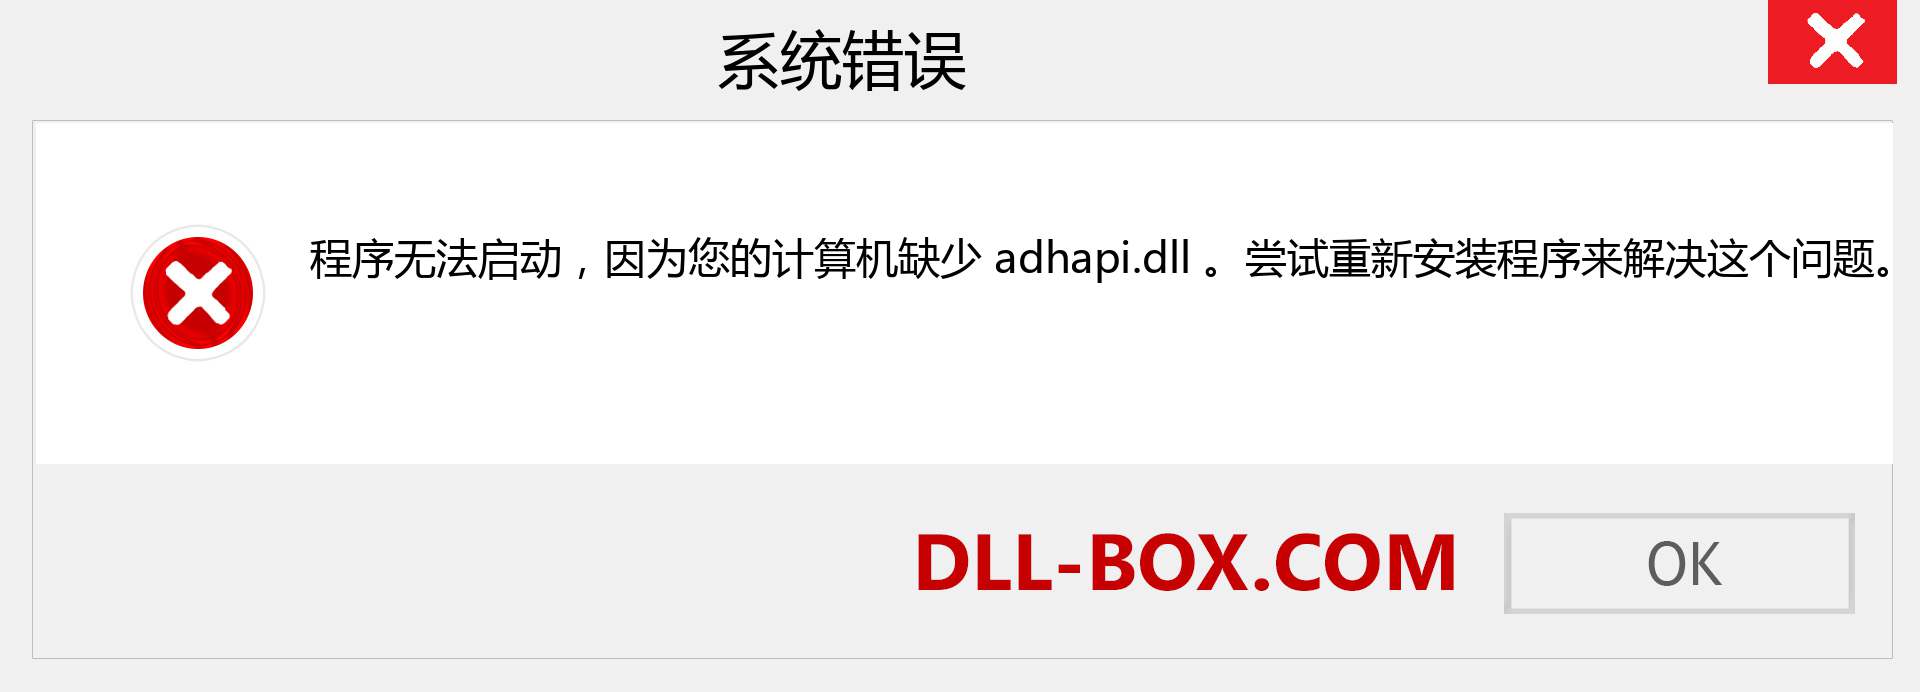 adhapi.dll 文件丢失？。 适用于 Windows 7、8、10 的下载 - 修复 Windows、照片、图像上的 adhapi dll 丢失错误